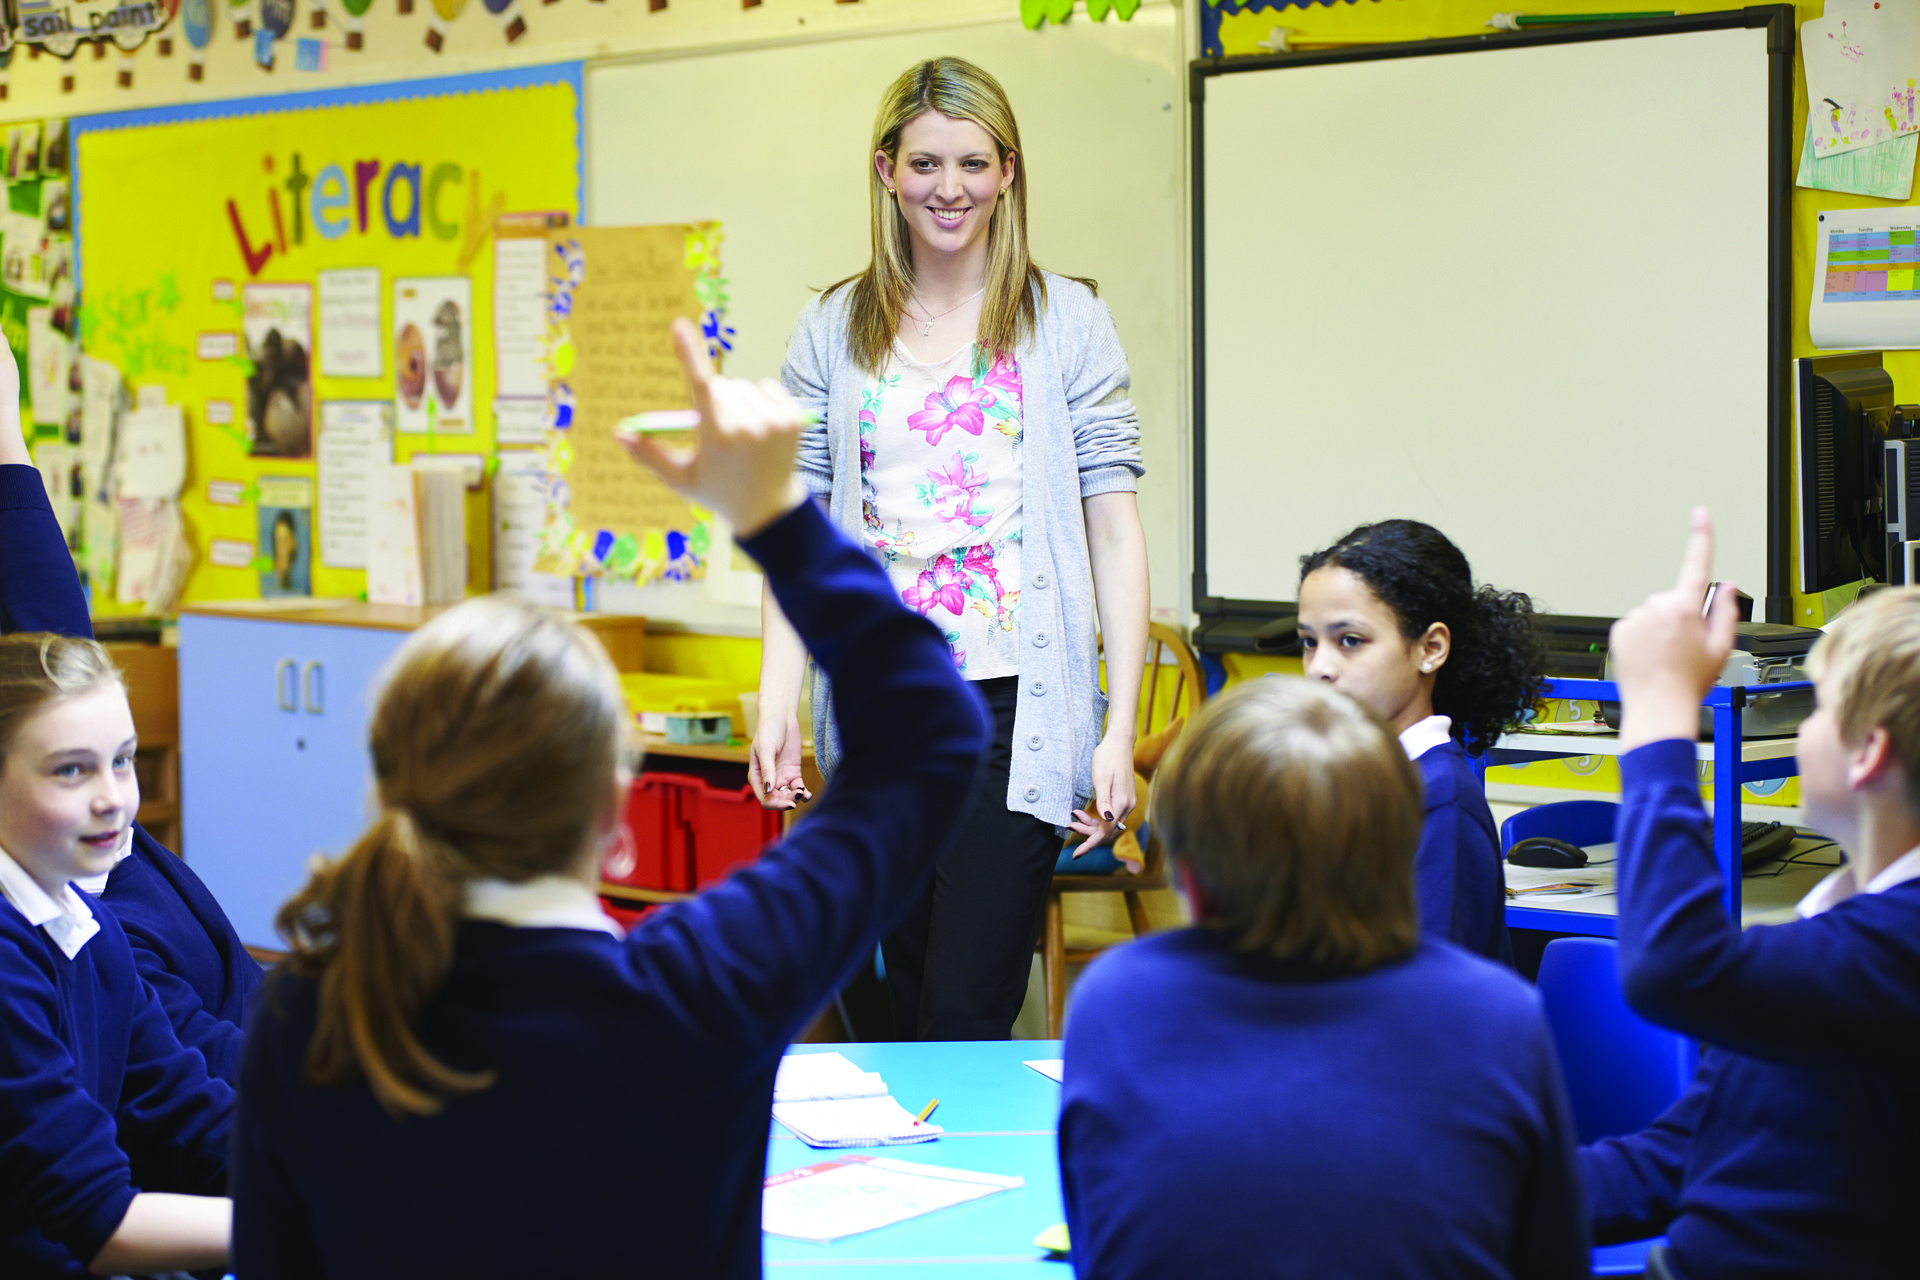 Švietimo mainų paramos fondas sveikina mokytojus su Tarptautine mokytojų diena